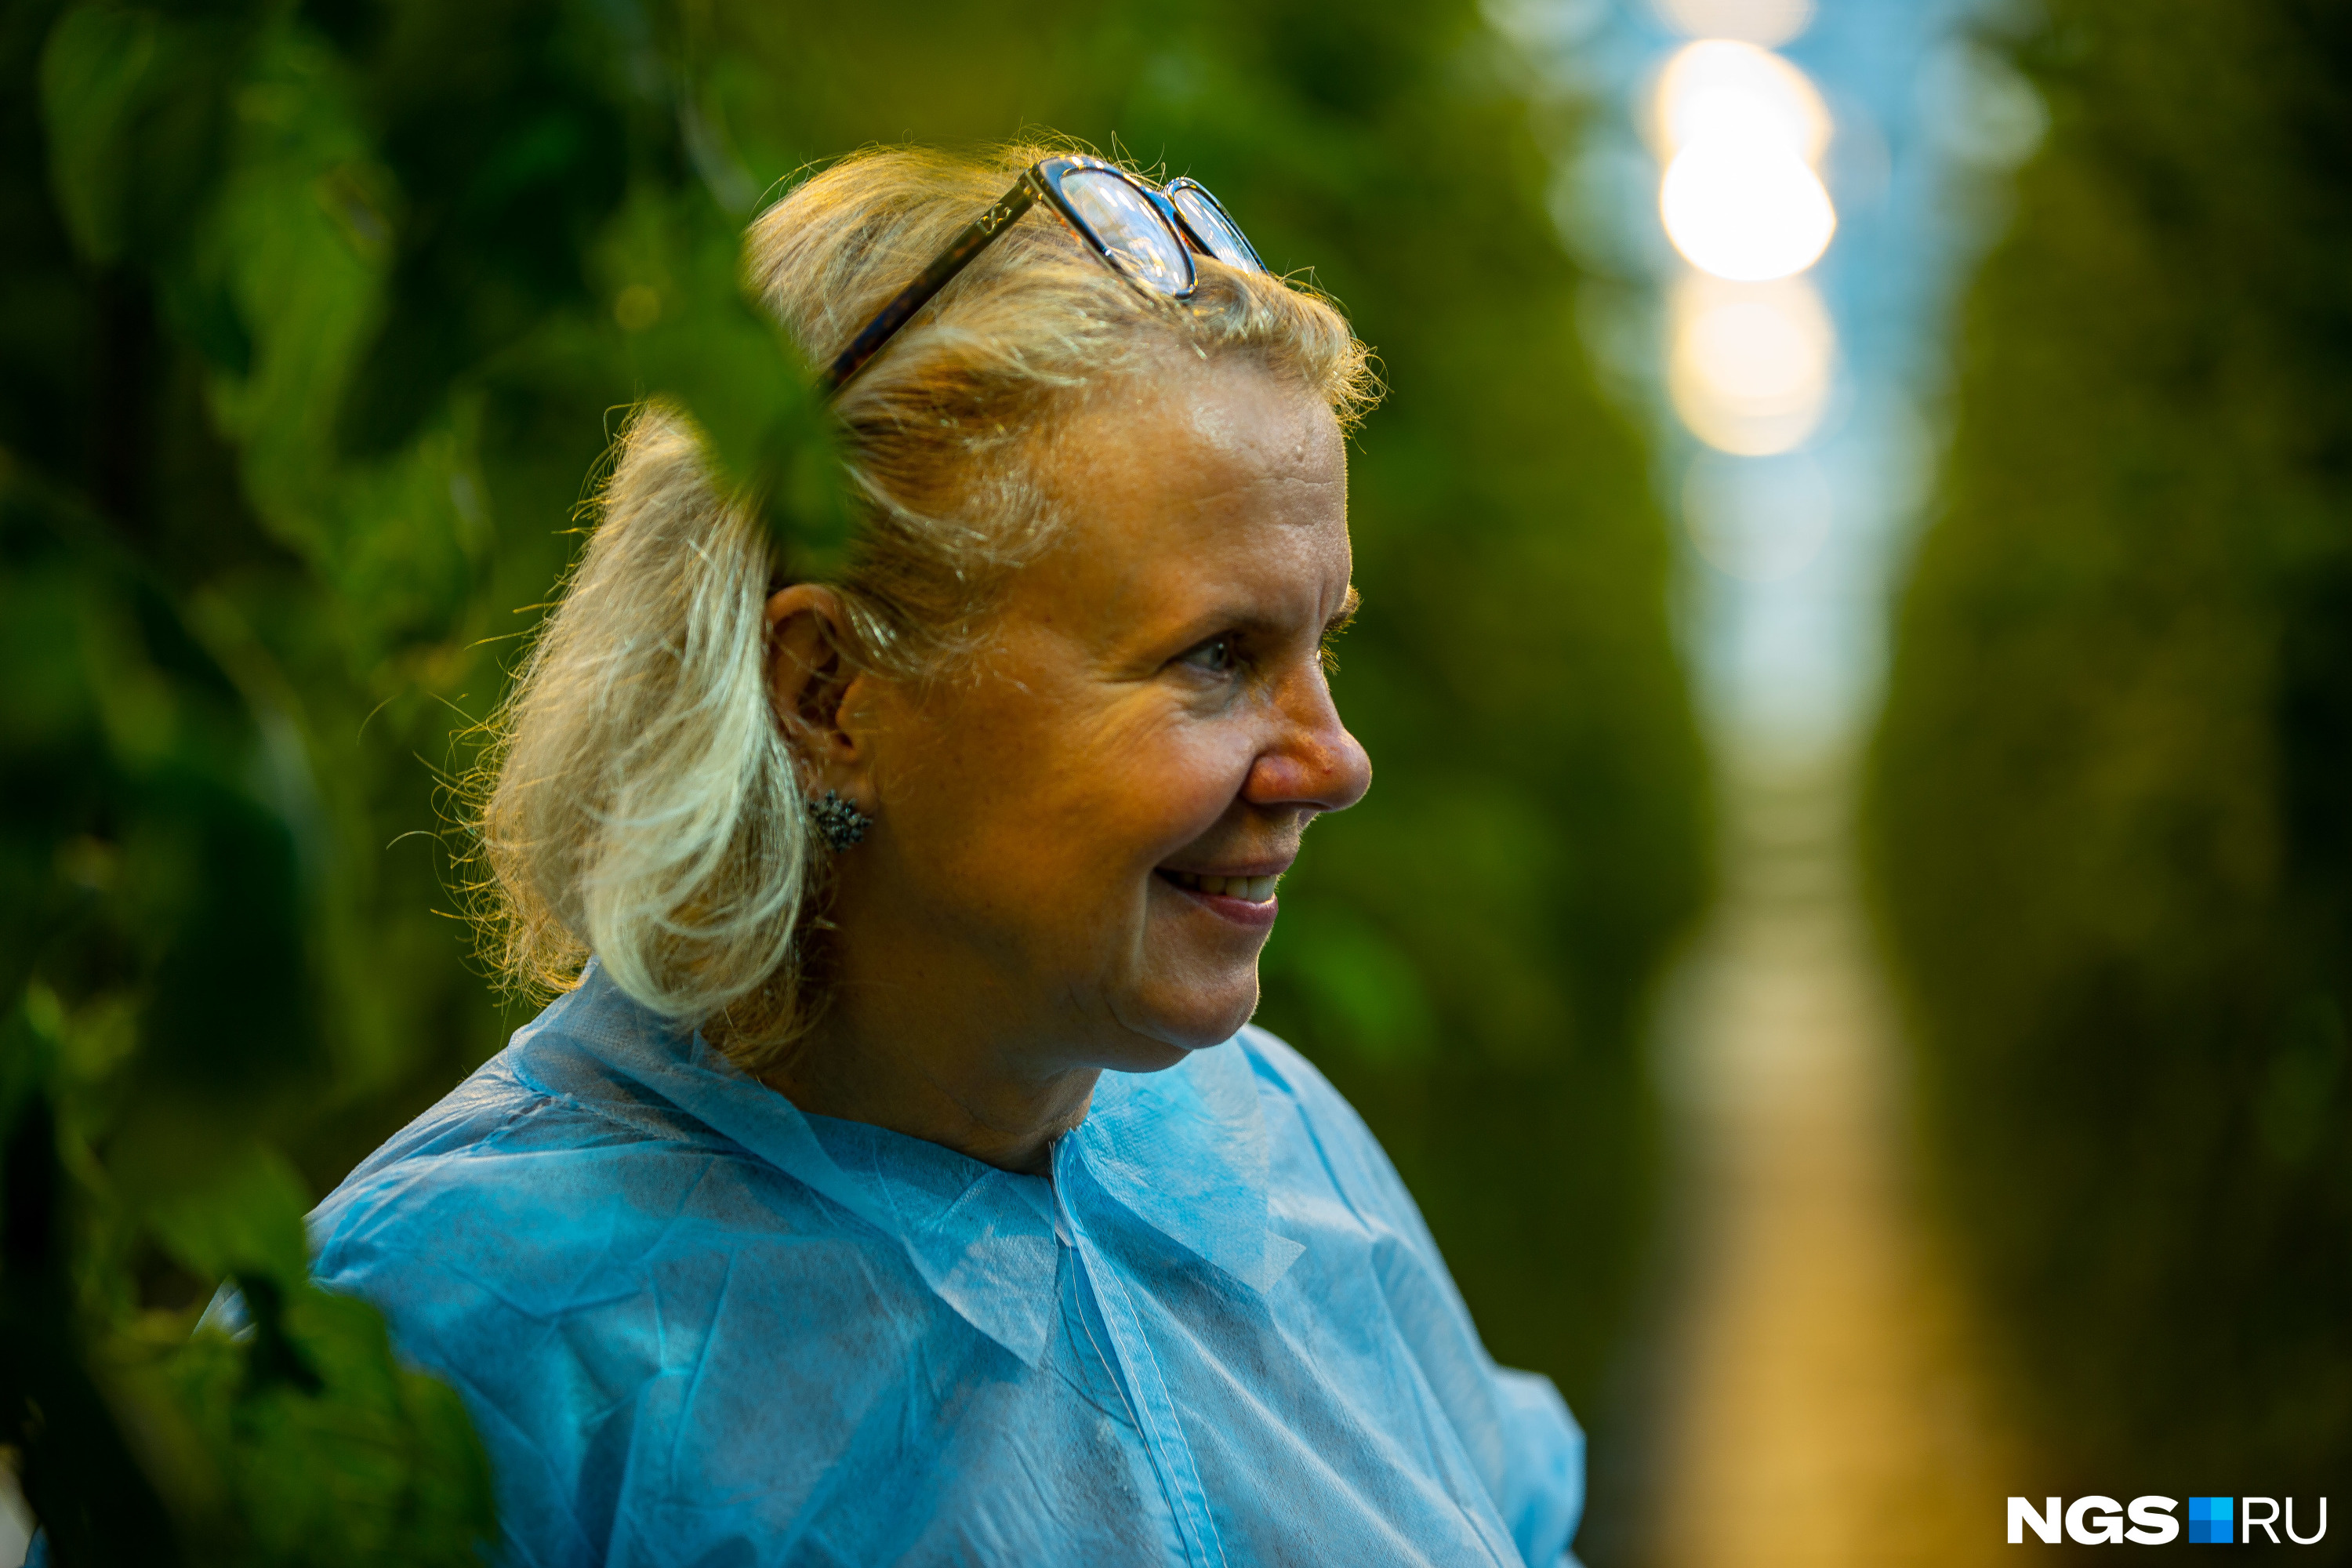 Директор «Садов Гиганта» Елена Полупанова рассказала, что томаты вырастают до 17–18 и иногда даже до 20 метров. Но так высоко они не возвышаются в теплицах — растения опускают вниз